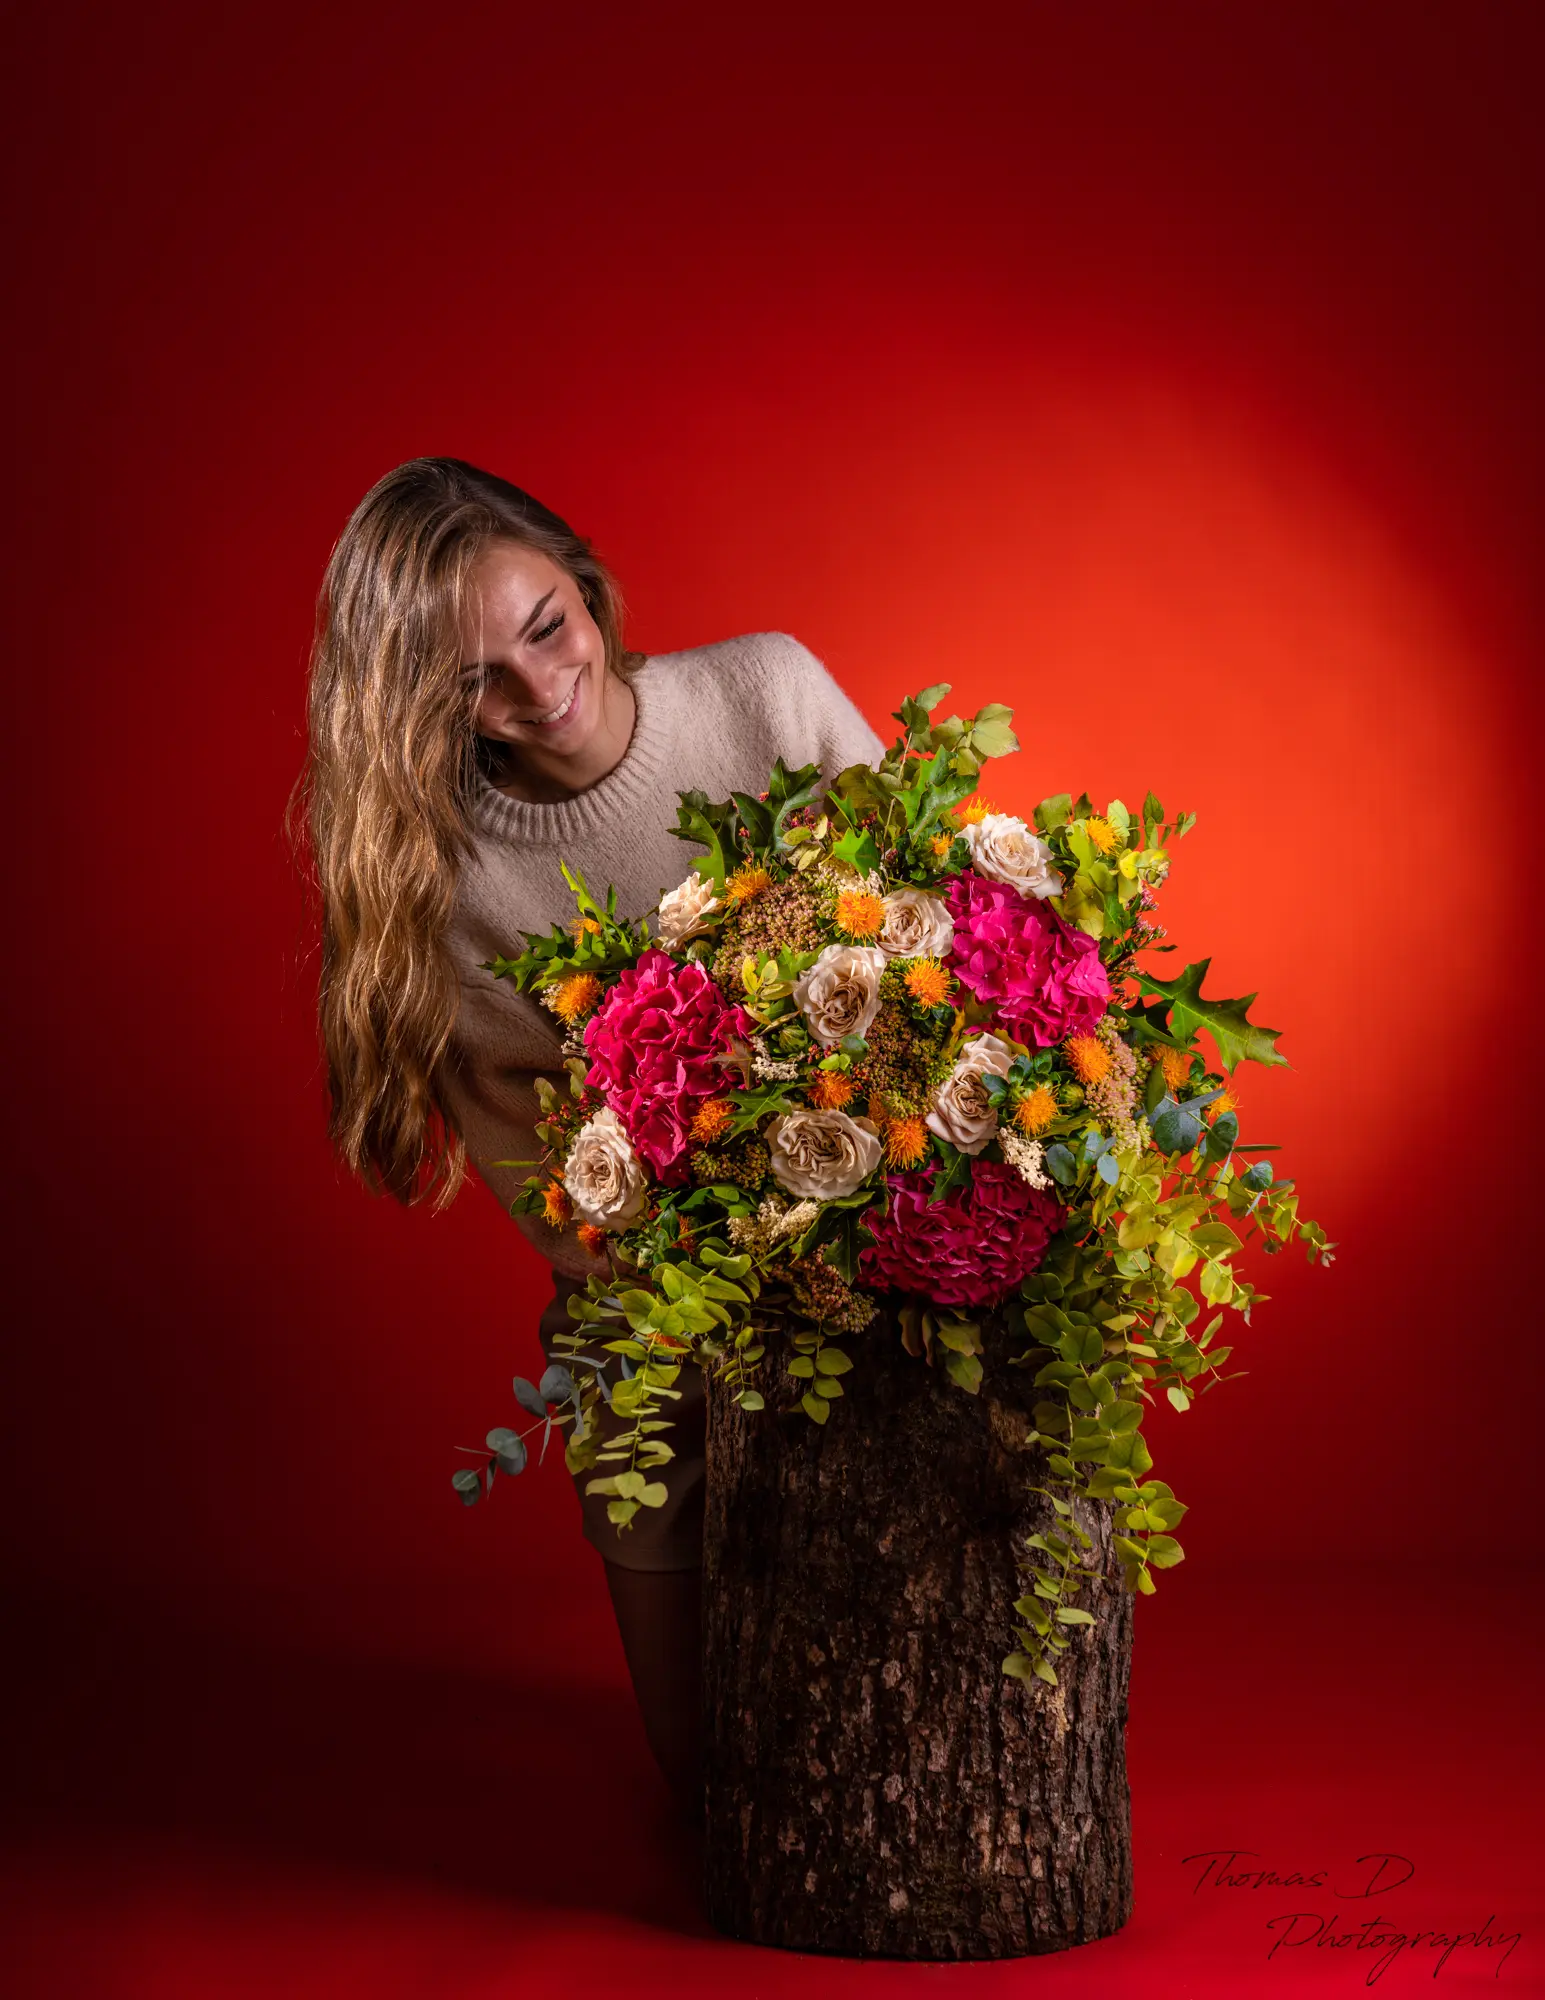 Thomas D Photographe - Femme avec des fleurs